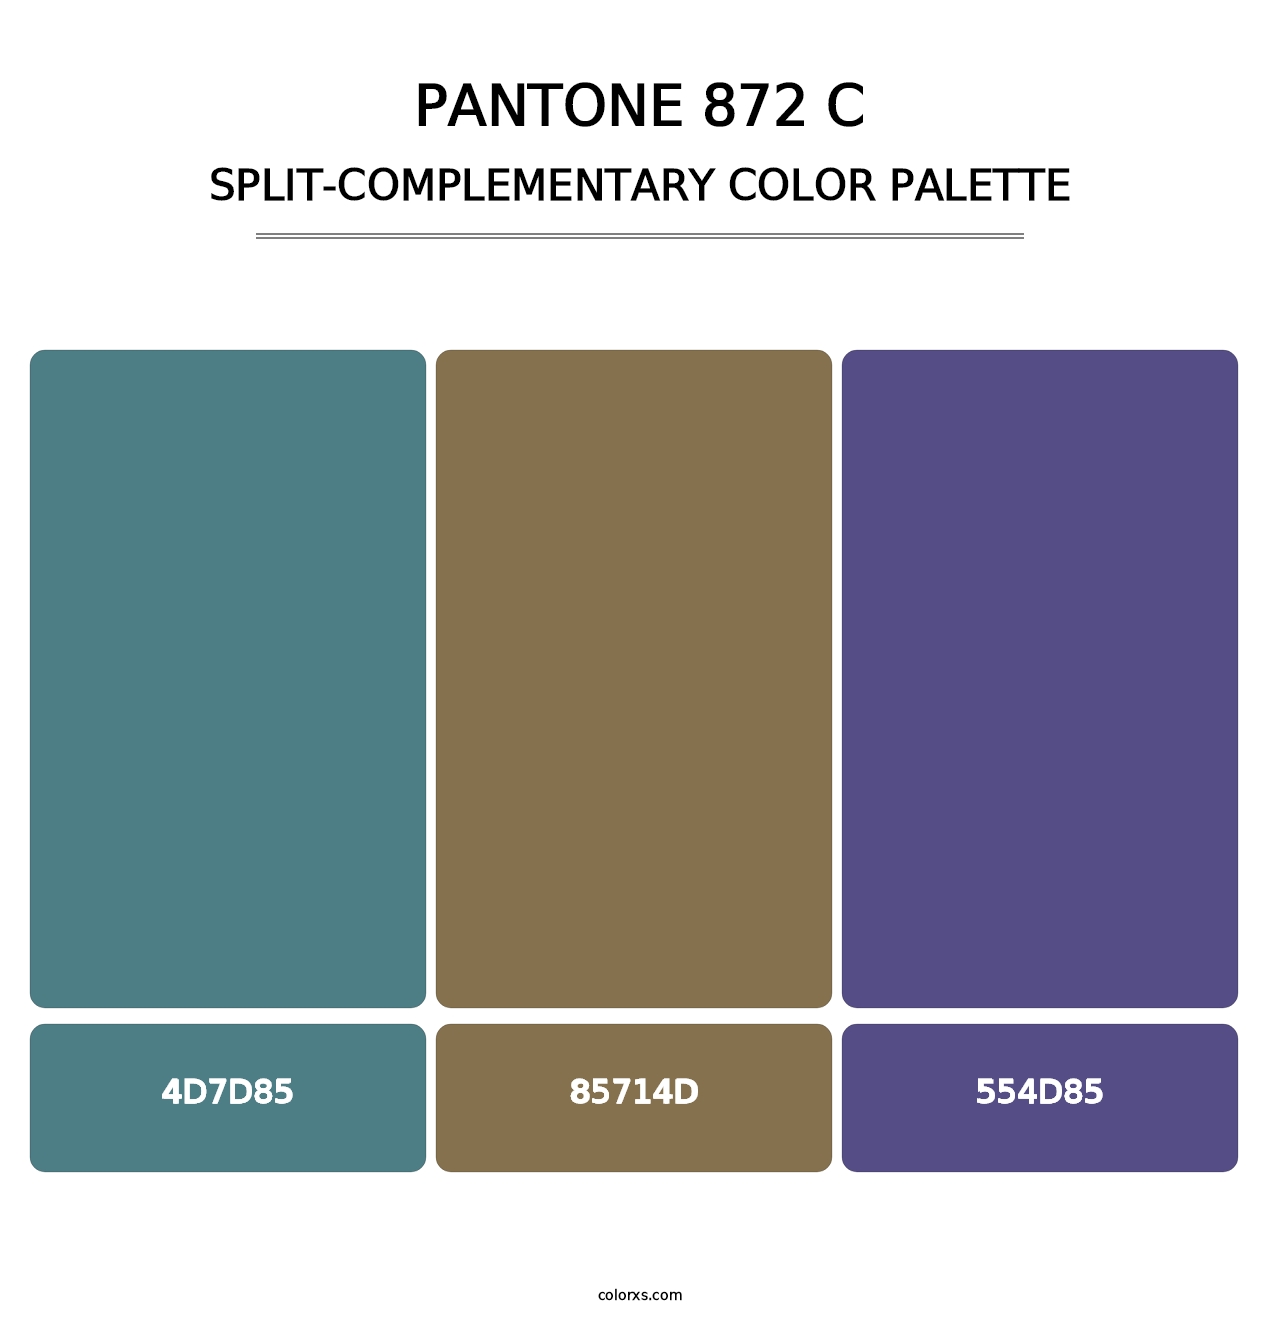 PANTONE 872 C - Split-Complementary Color Palette